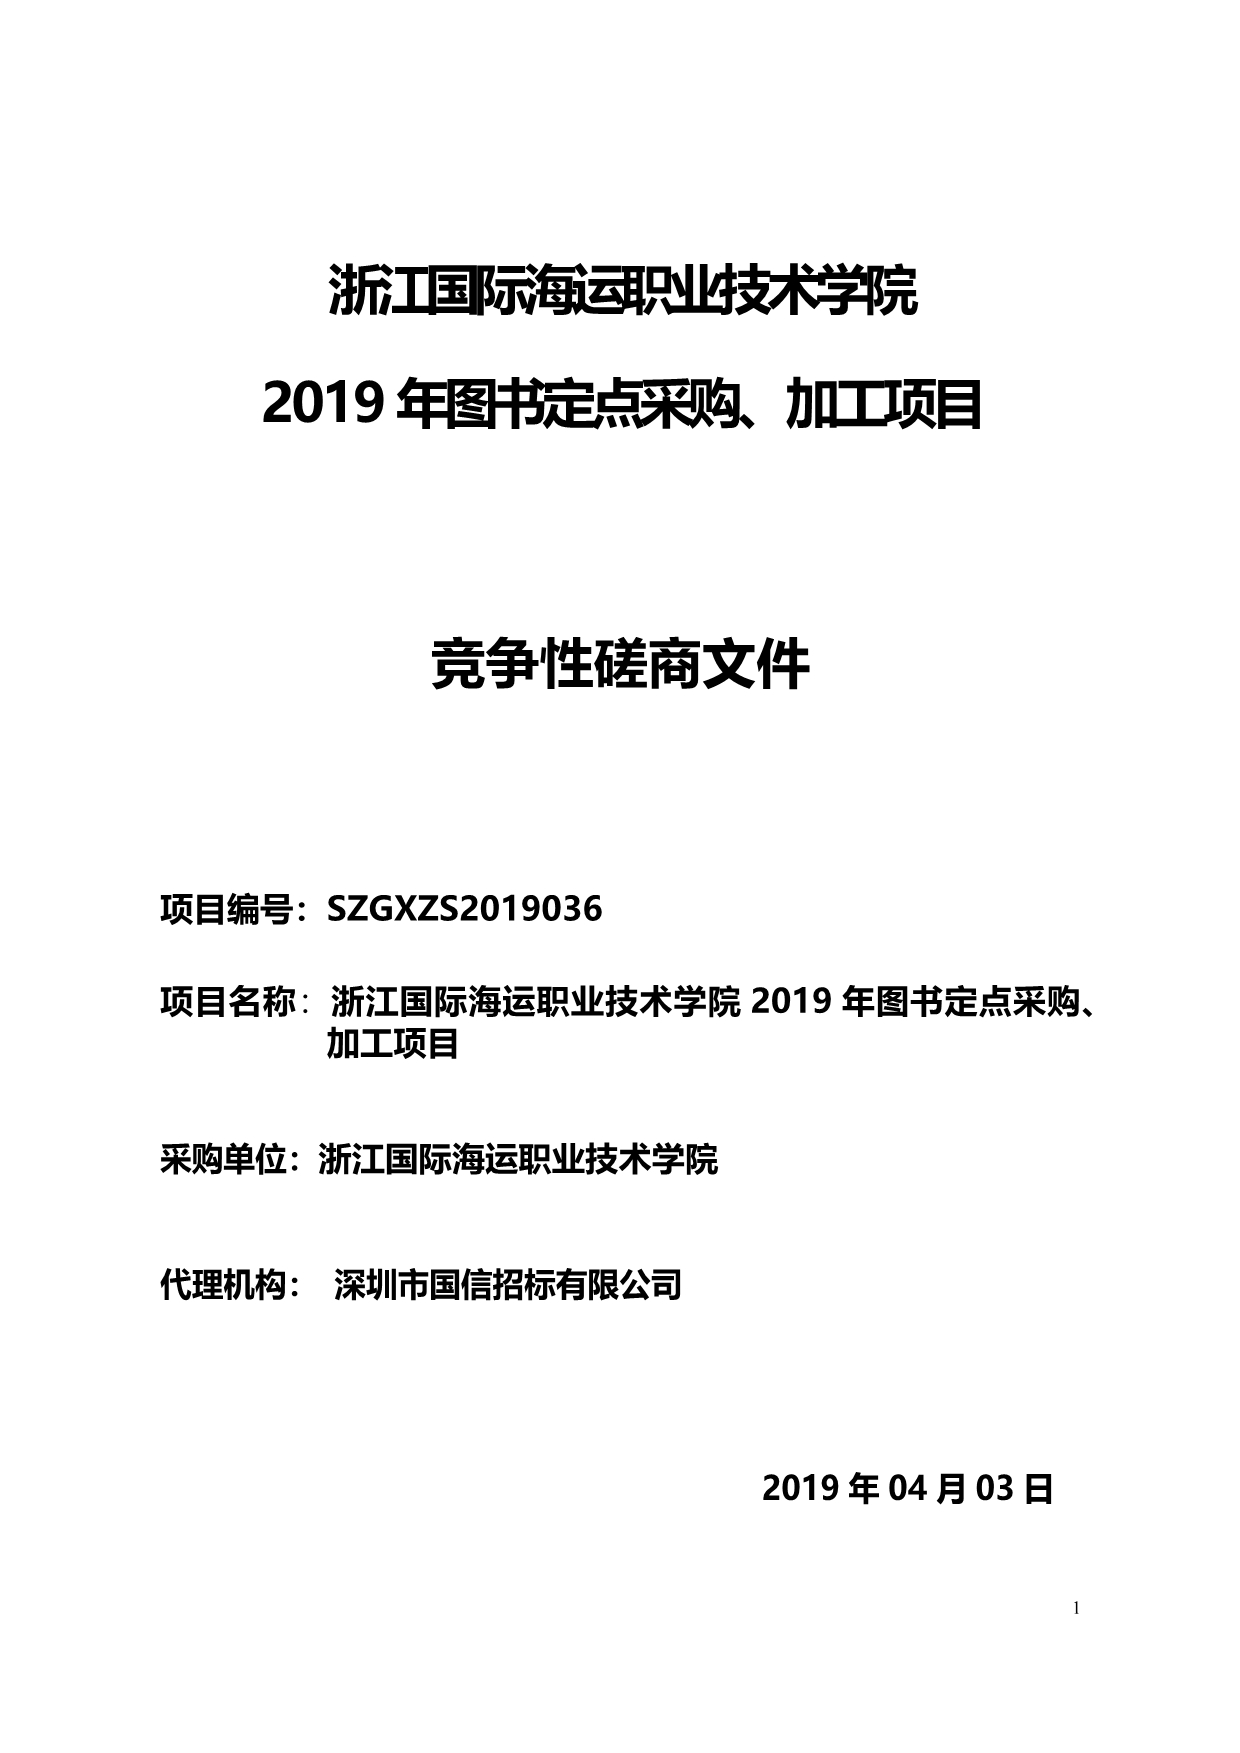 浙江国际海运职业技术学院 2019年图书定点采购、加工项目竞争性磋商文件 (1)_第1页